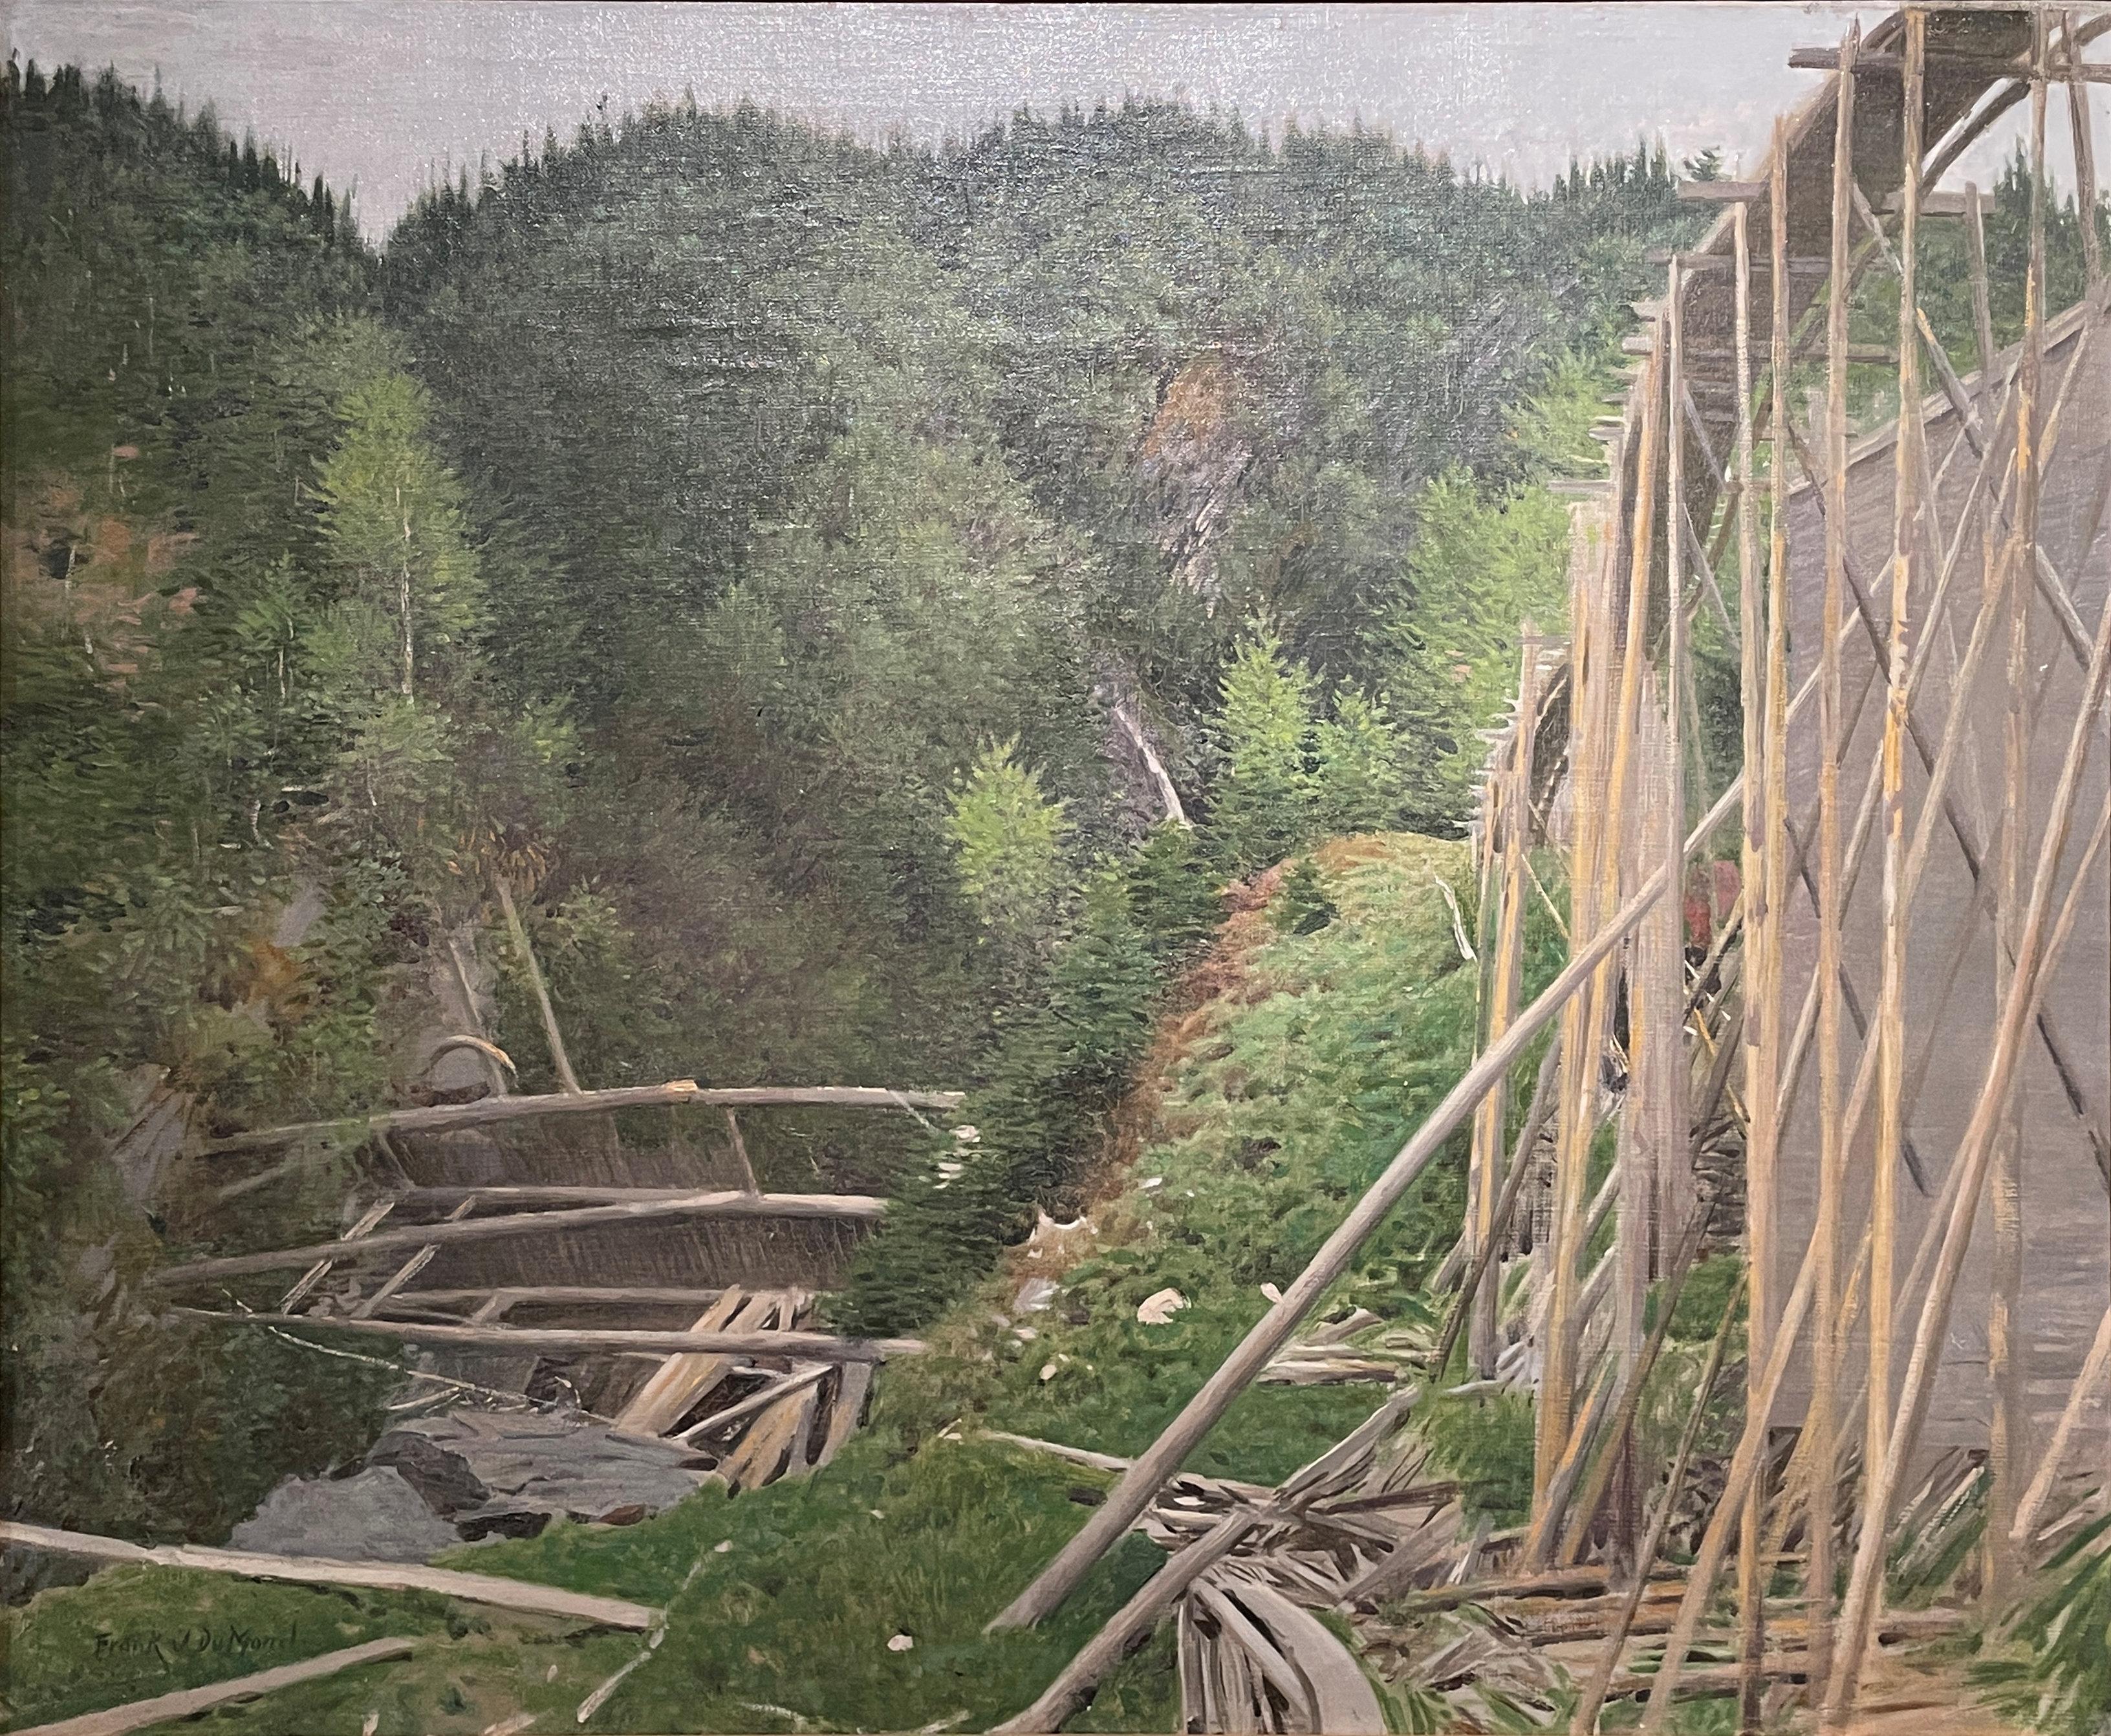 Frank Vincent Dumond Landscape Painting - "Train Trestle, " Frank DuMond, Old Lyme Connecticut Impressionism Landscape